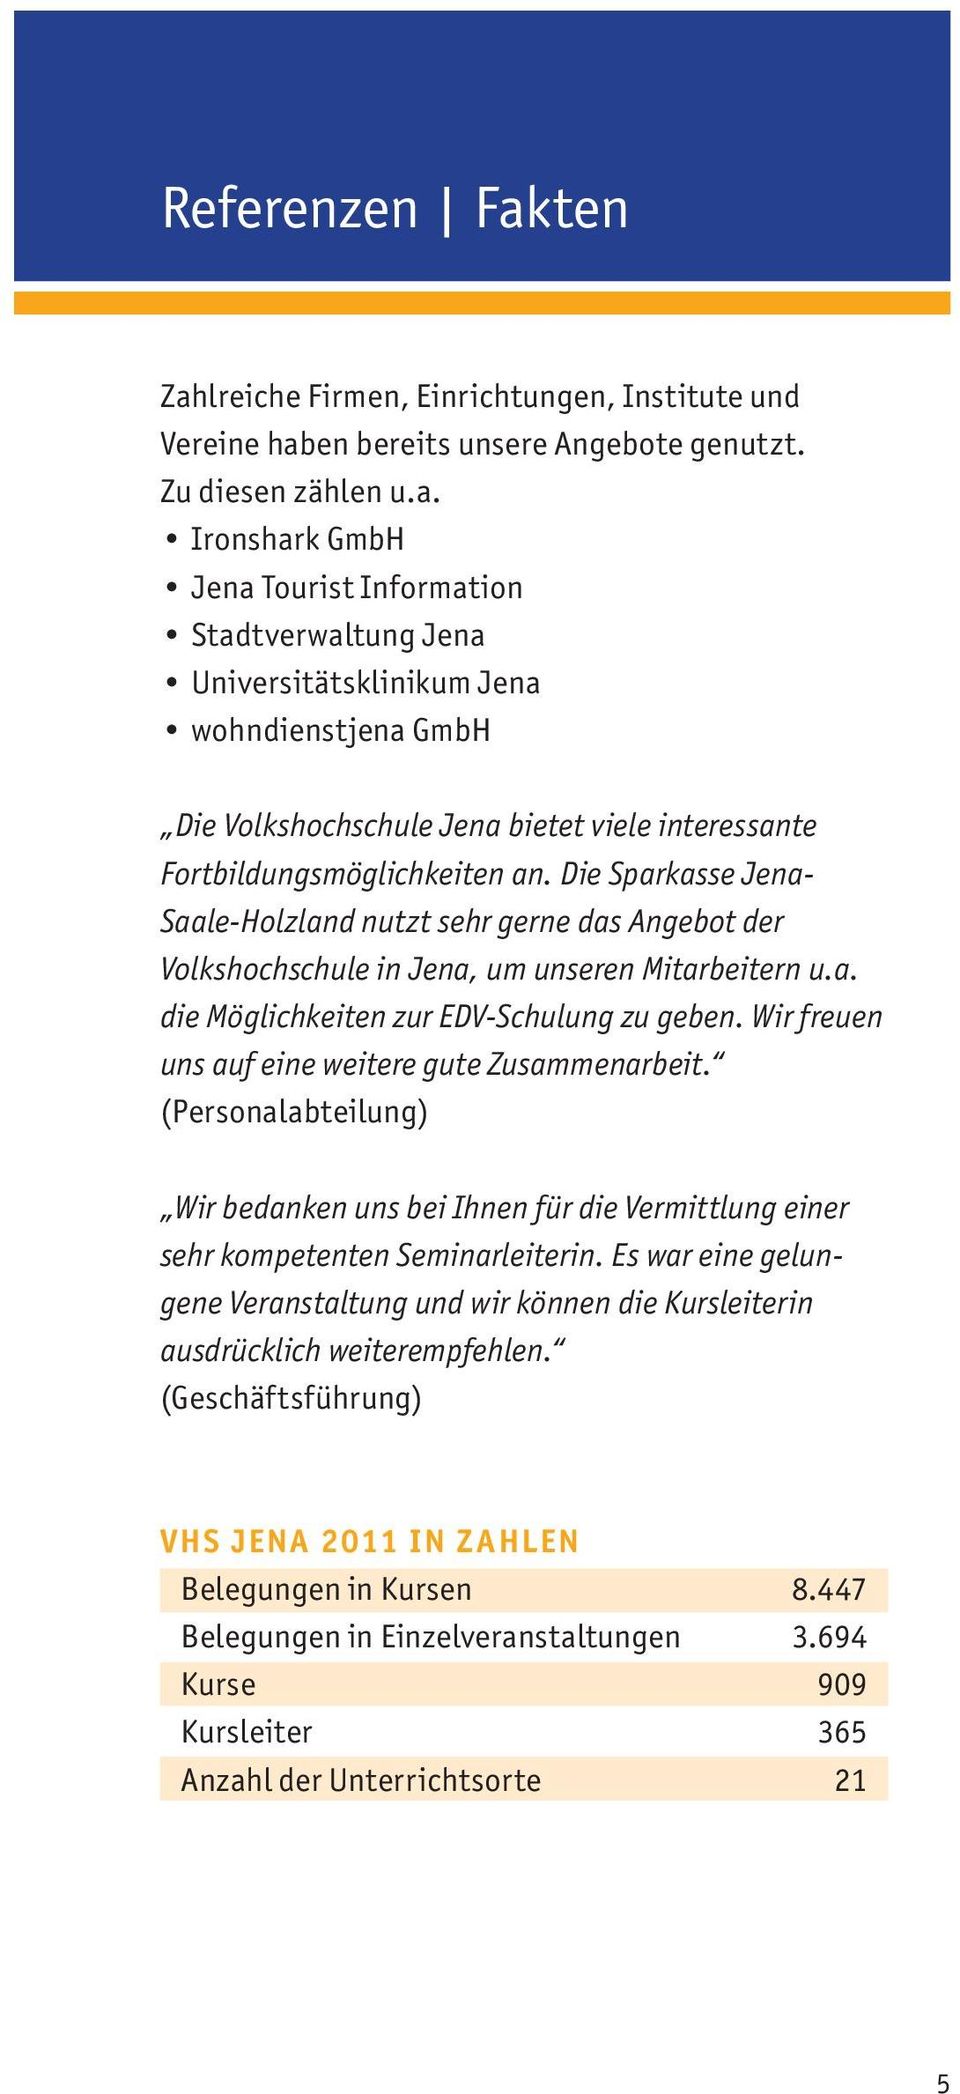 Die Sparkasse Jena- Saale-Holzland nutzt sehr gerne das Angebot der Volkshochschule in Jena, um unseren Mitarbeitern u.a. die Möglichkeiten zur EDV-Schulung zu geben.